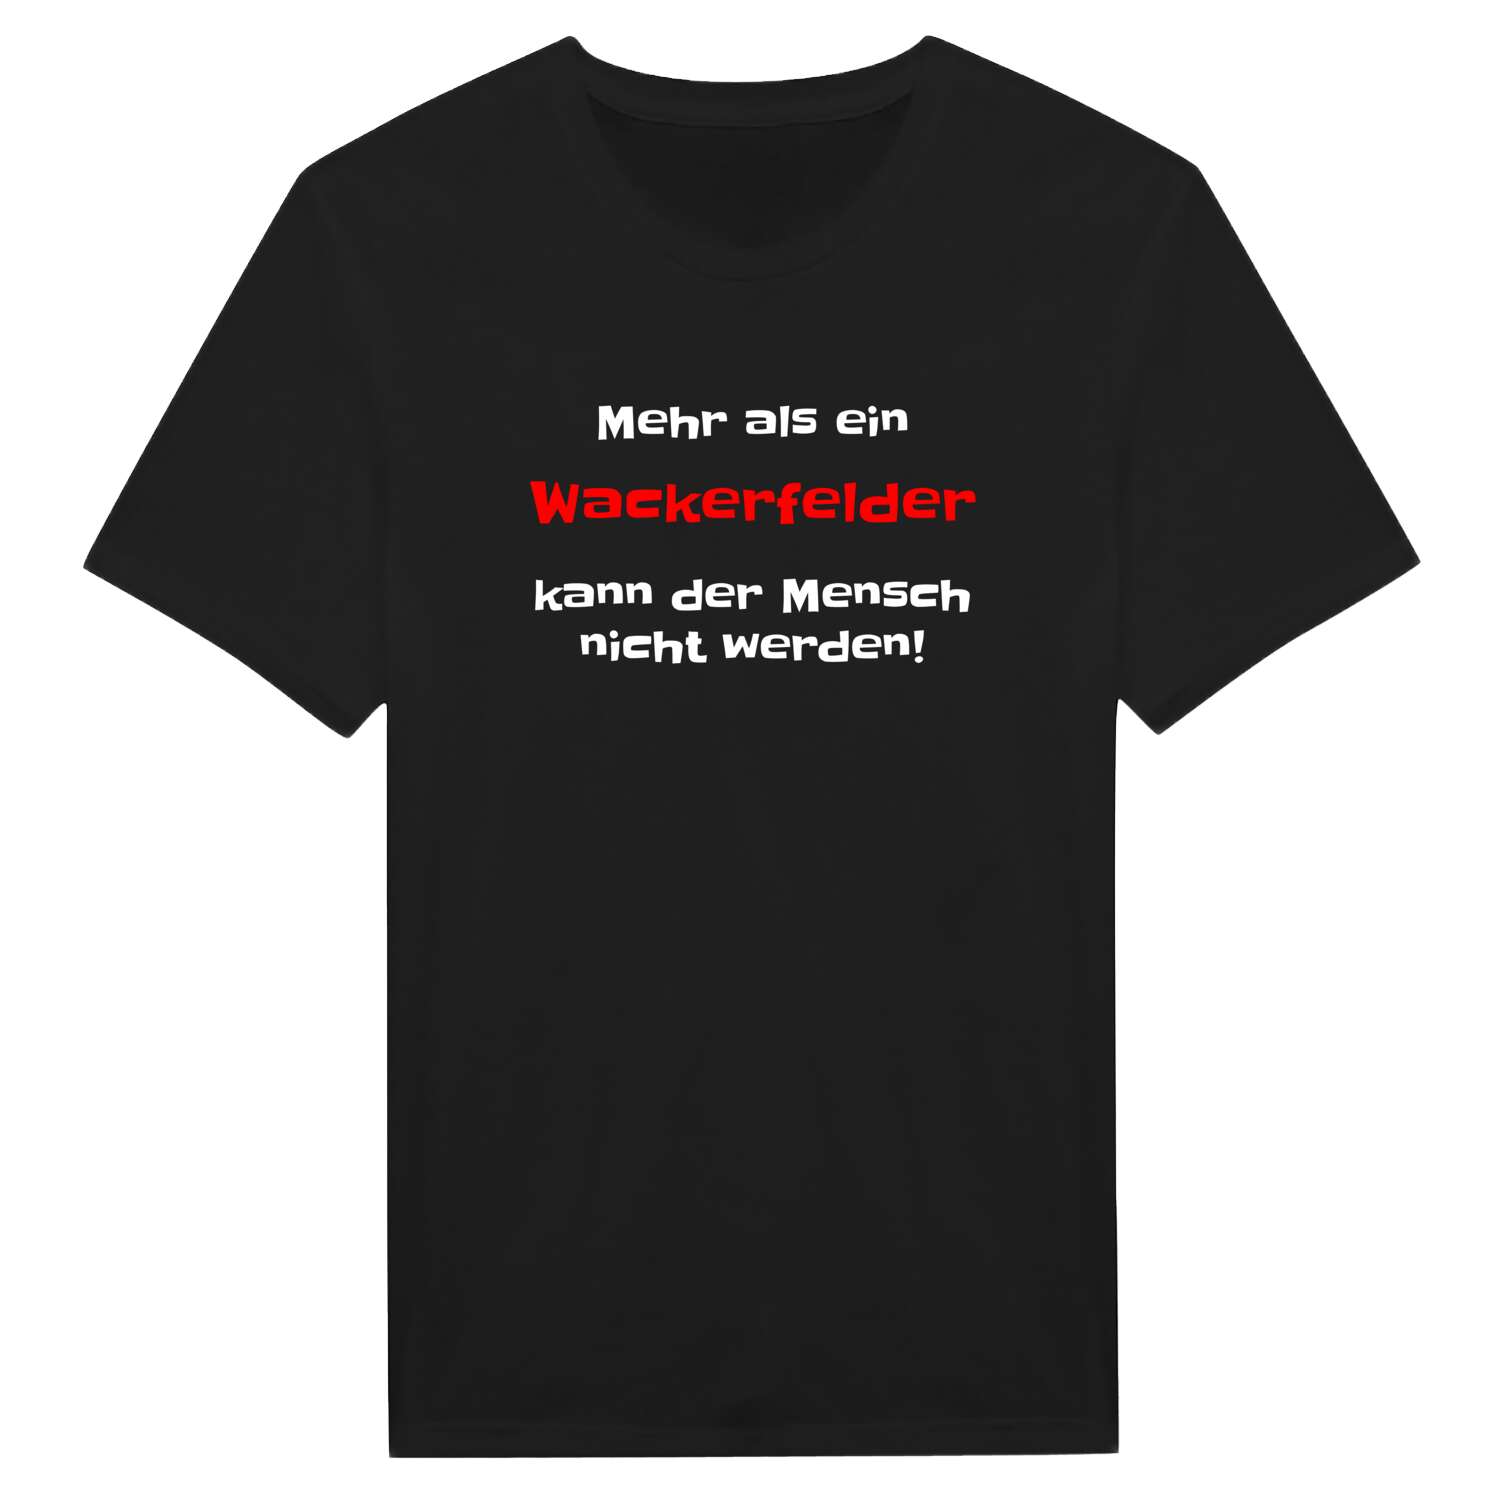 Wackerfeld T-Shirt »Mehr als ein«